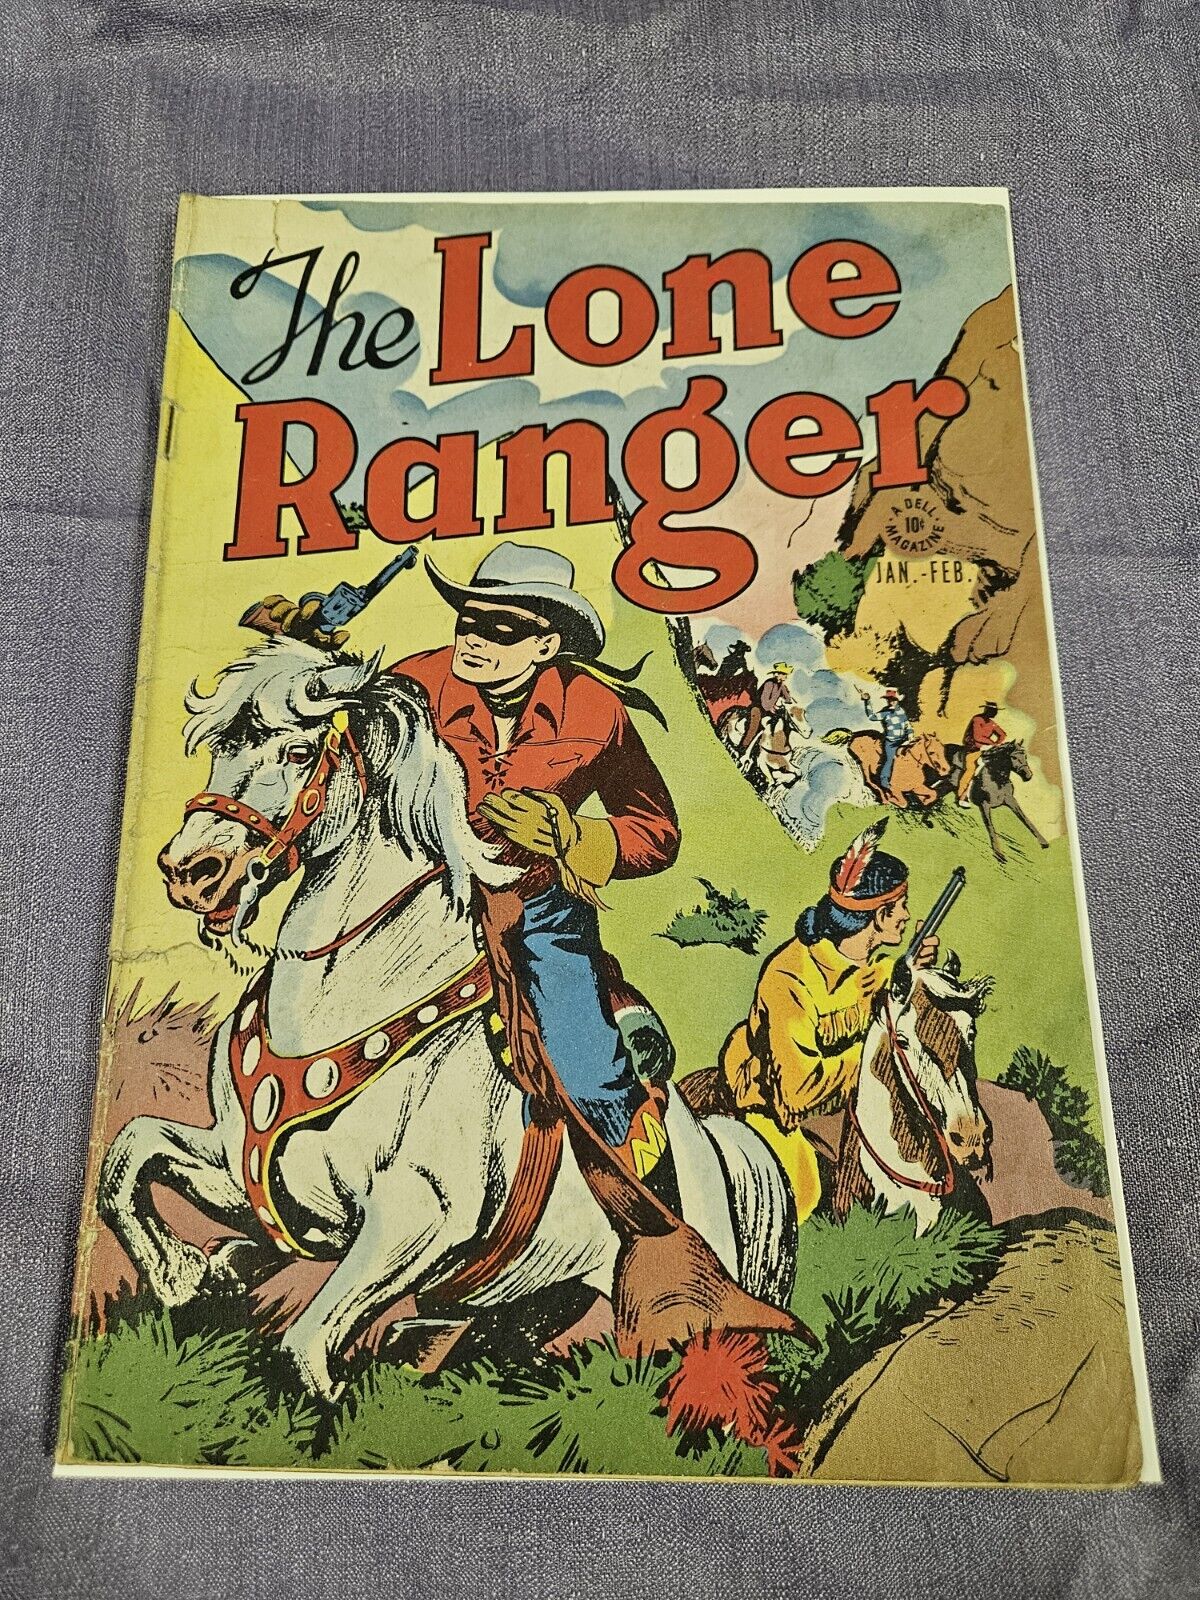 The Lone Ranger #1 (1948) Dell Comics Tonto Western Golden Age See Description